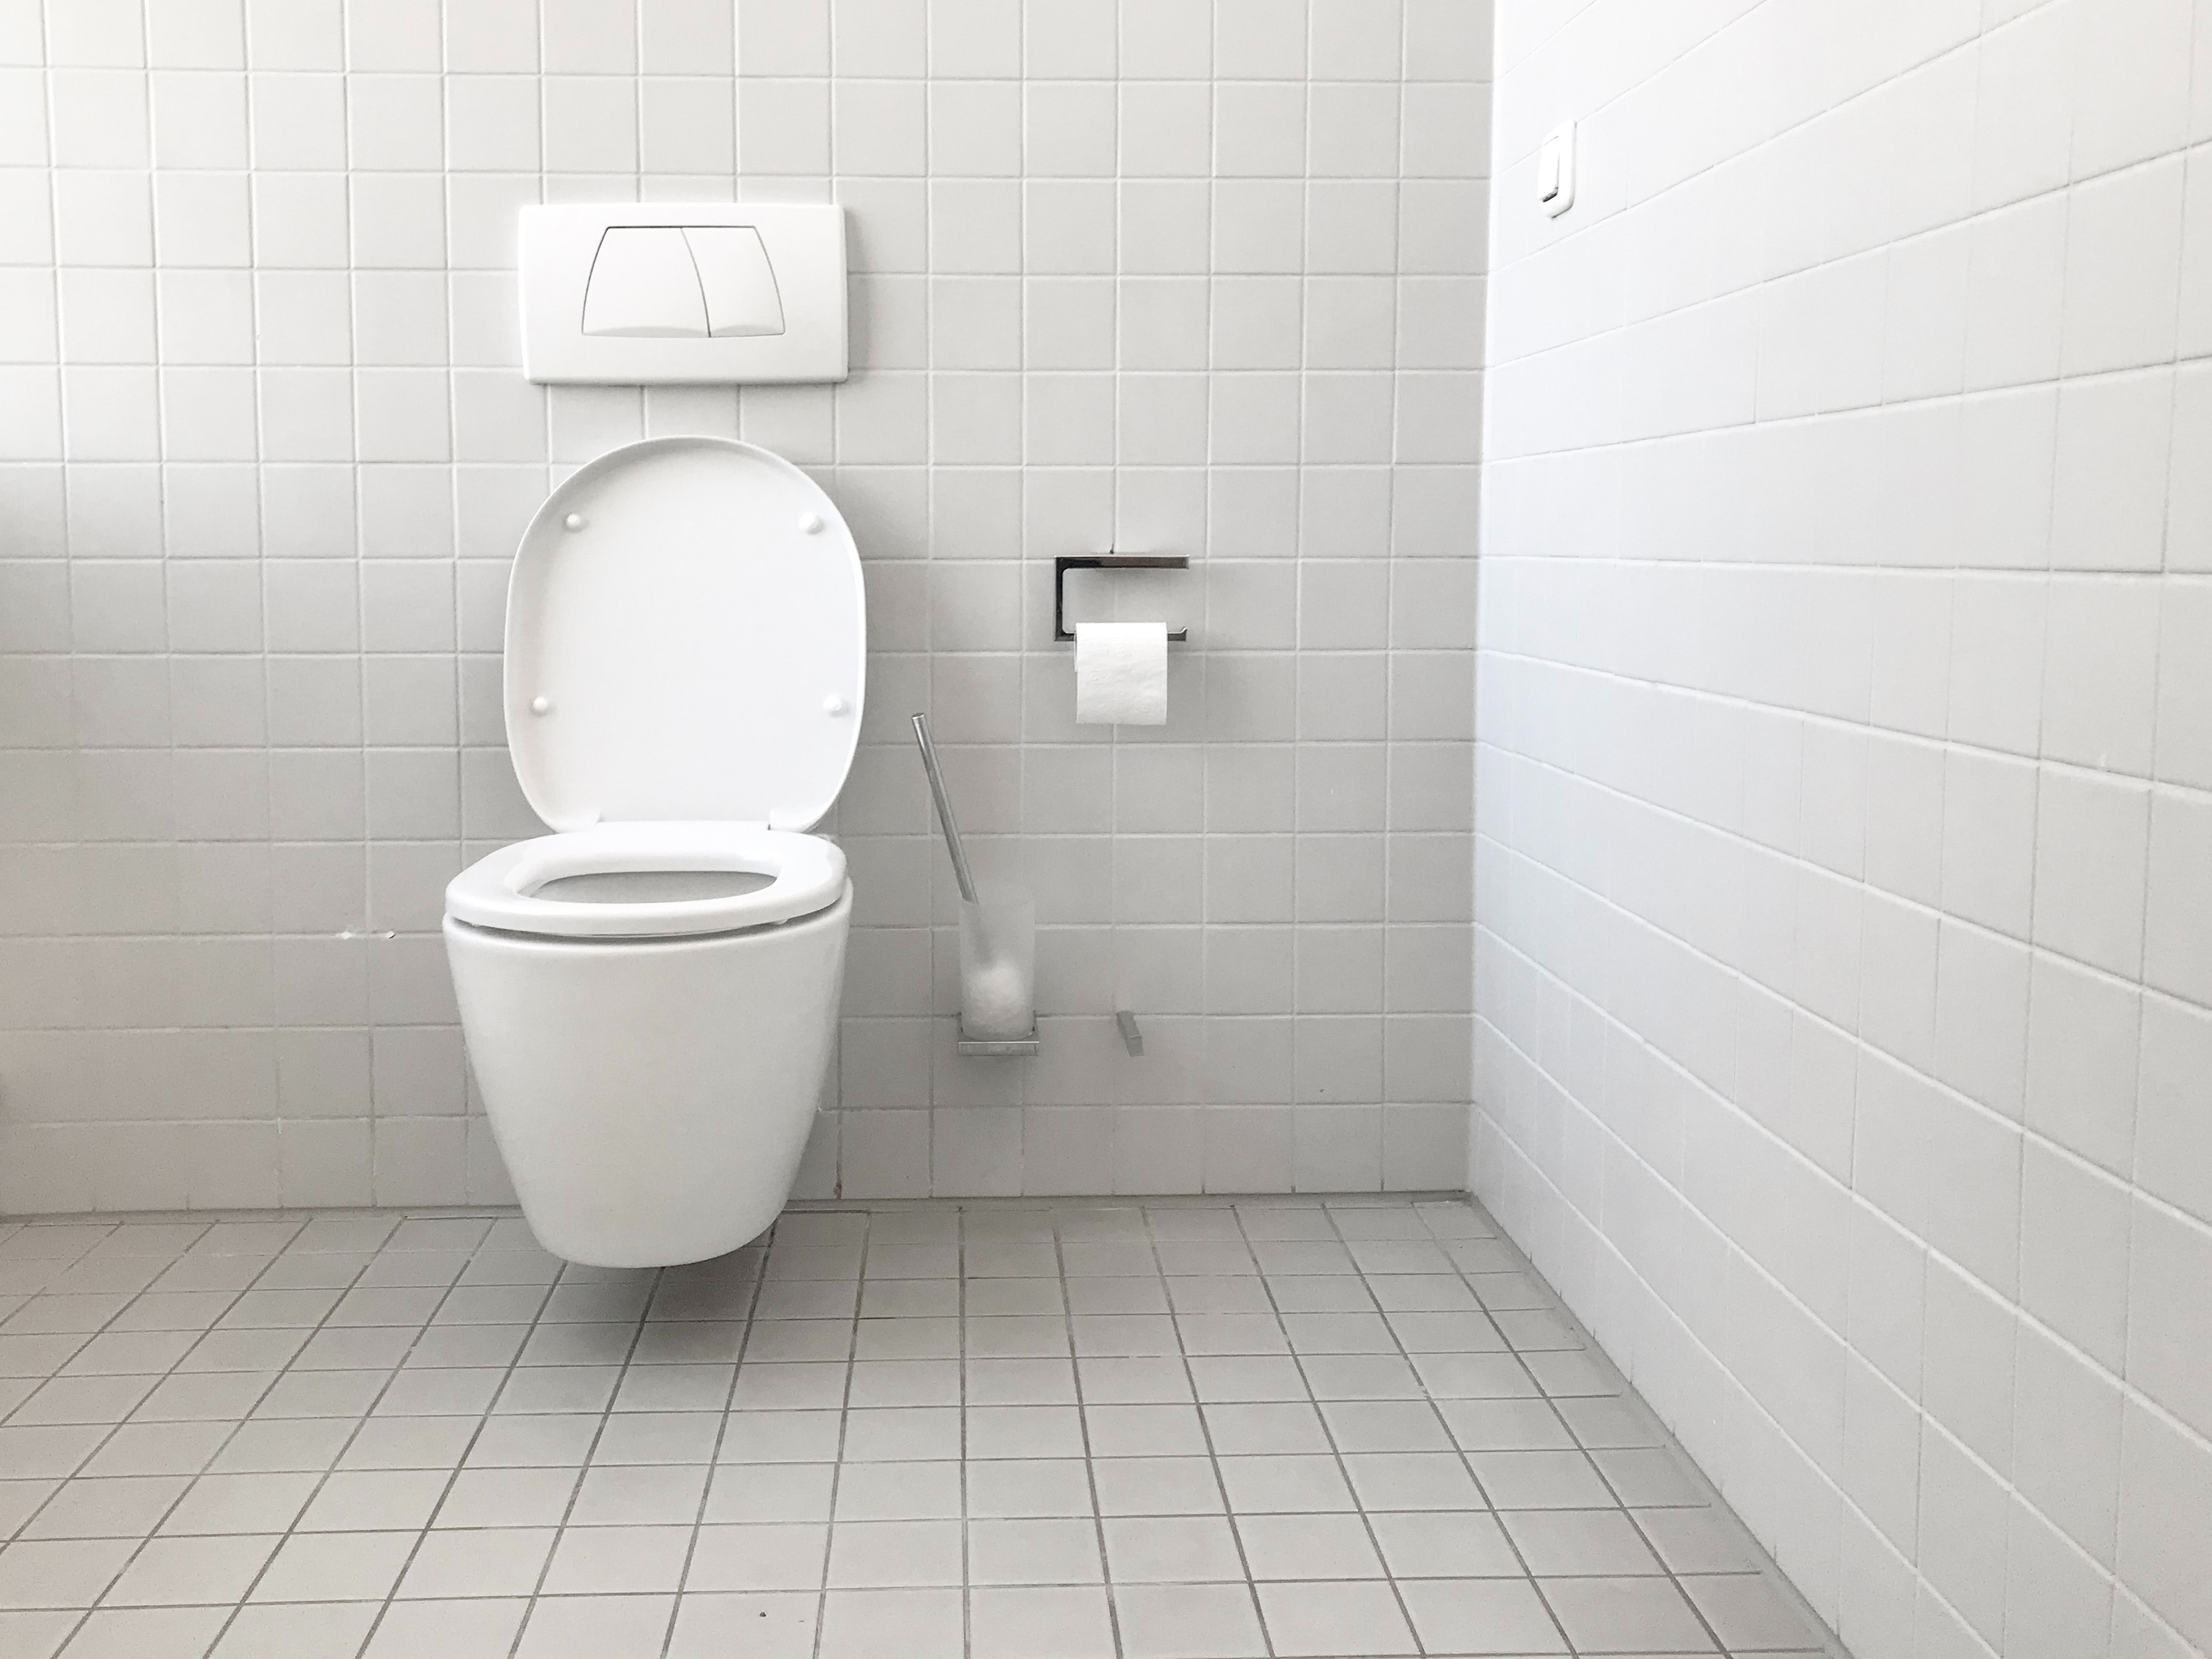 Toilettes publiques gratuites à Liège : il faut soulager ce besoin